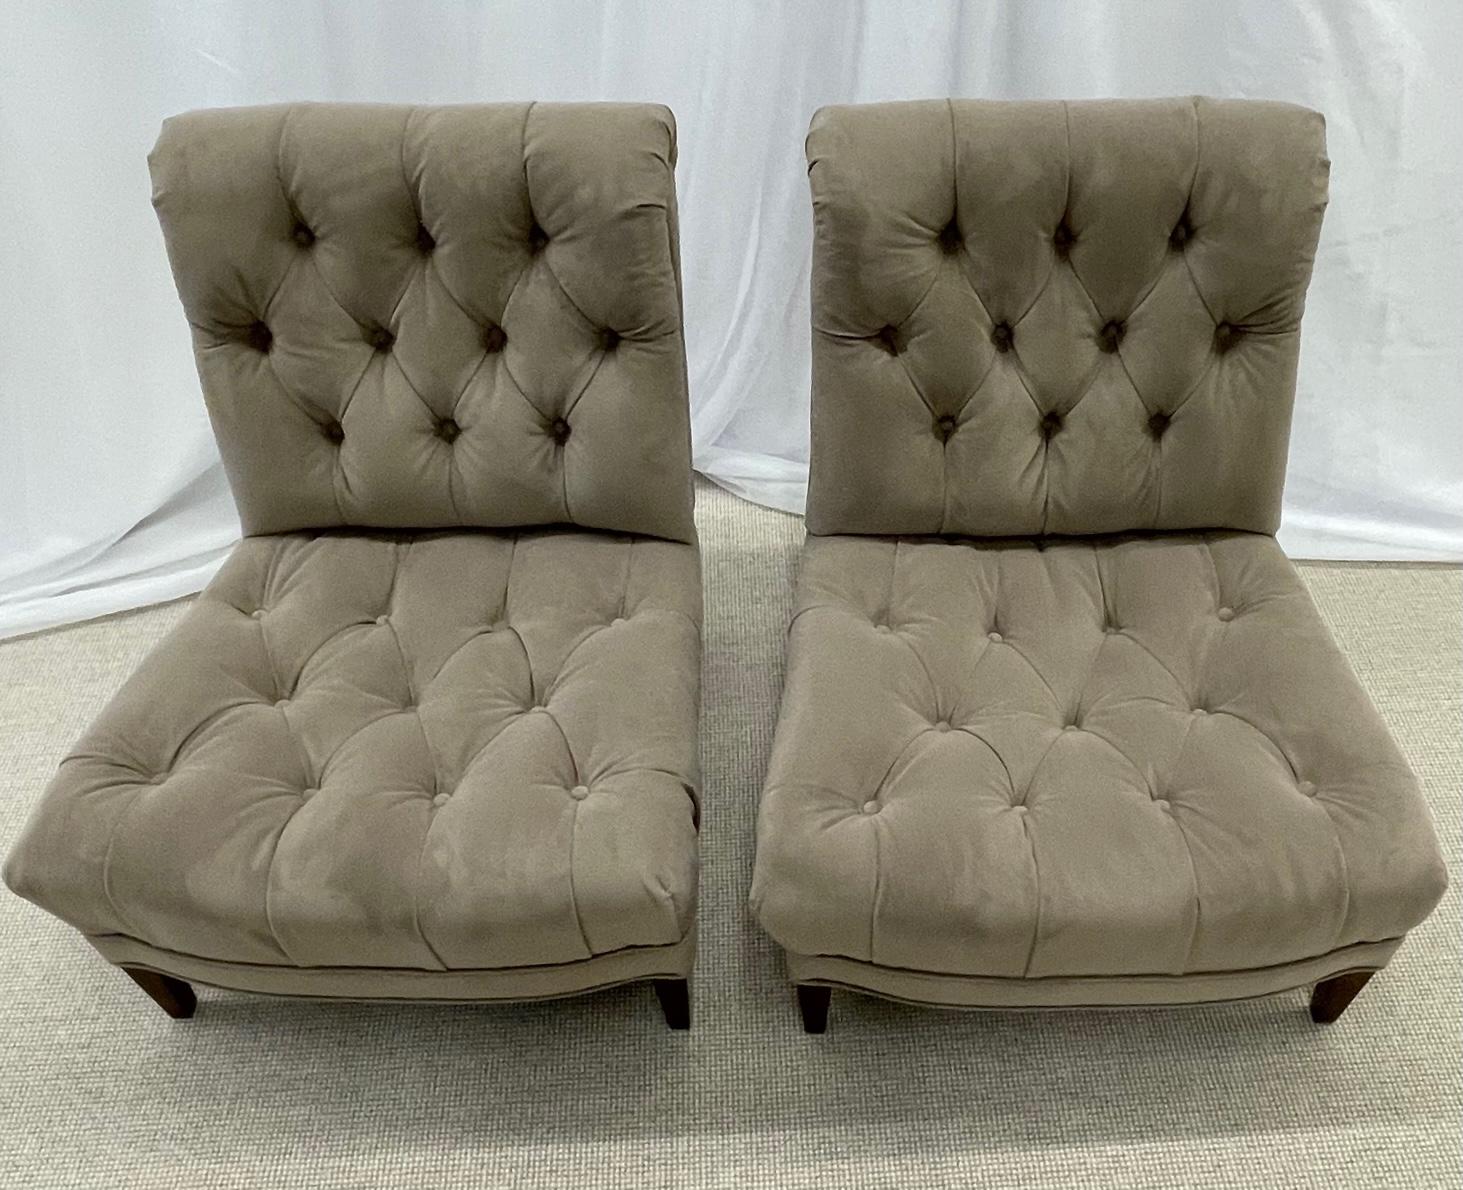 Paar Mid-Century Modern Slipper/Lounge Chairs, amerikanischer Designer, getuftet, Wildleder. Jeder der modernen Stühle aus der Mitte des Jahrhunderts ist robust und stabil, mit breiten Sitzflächen und Rückenlehnen. Die ganze mit brandneuen